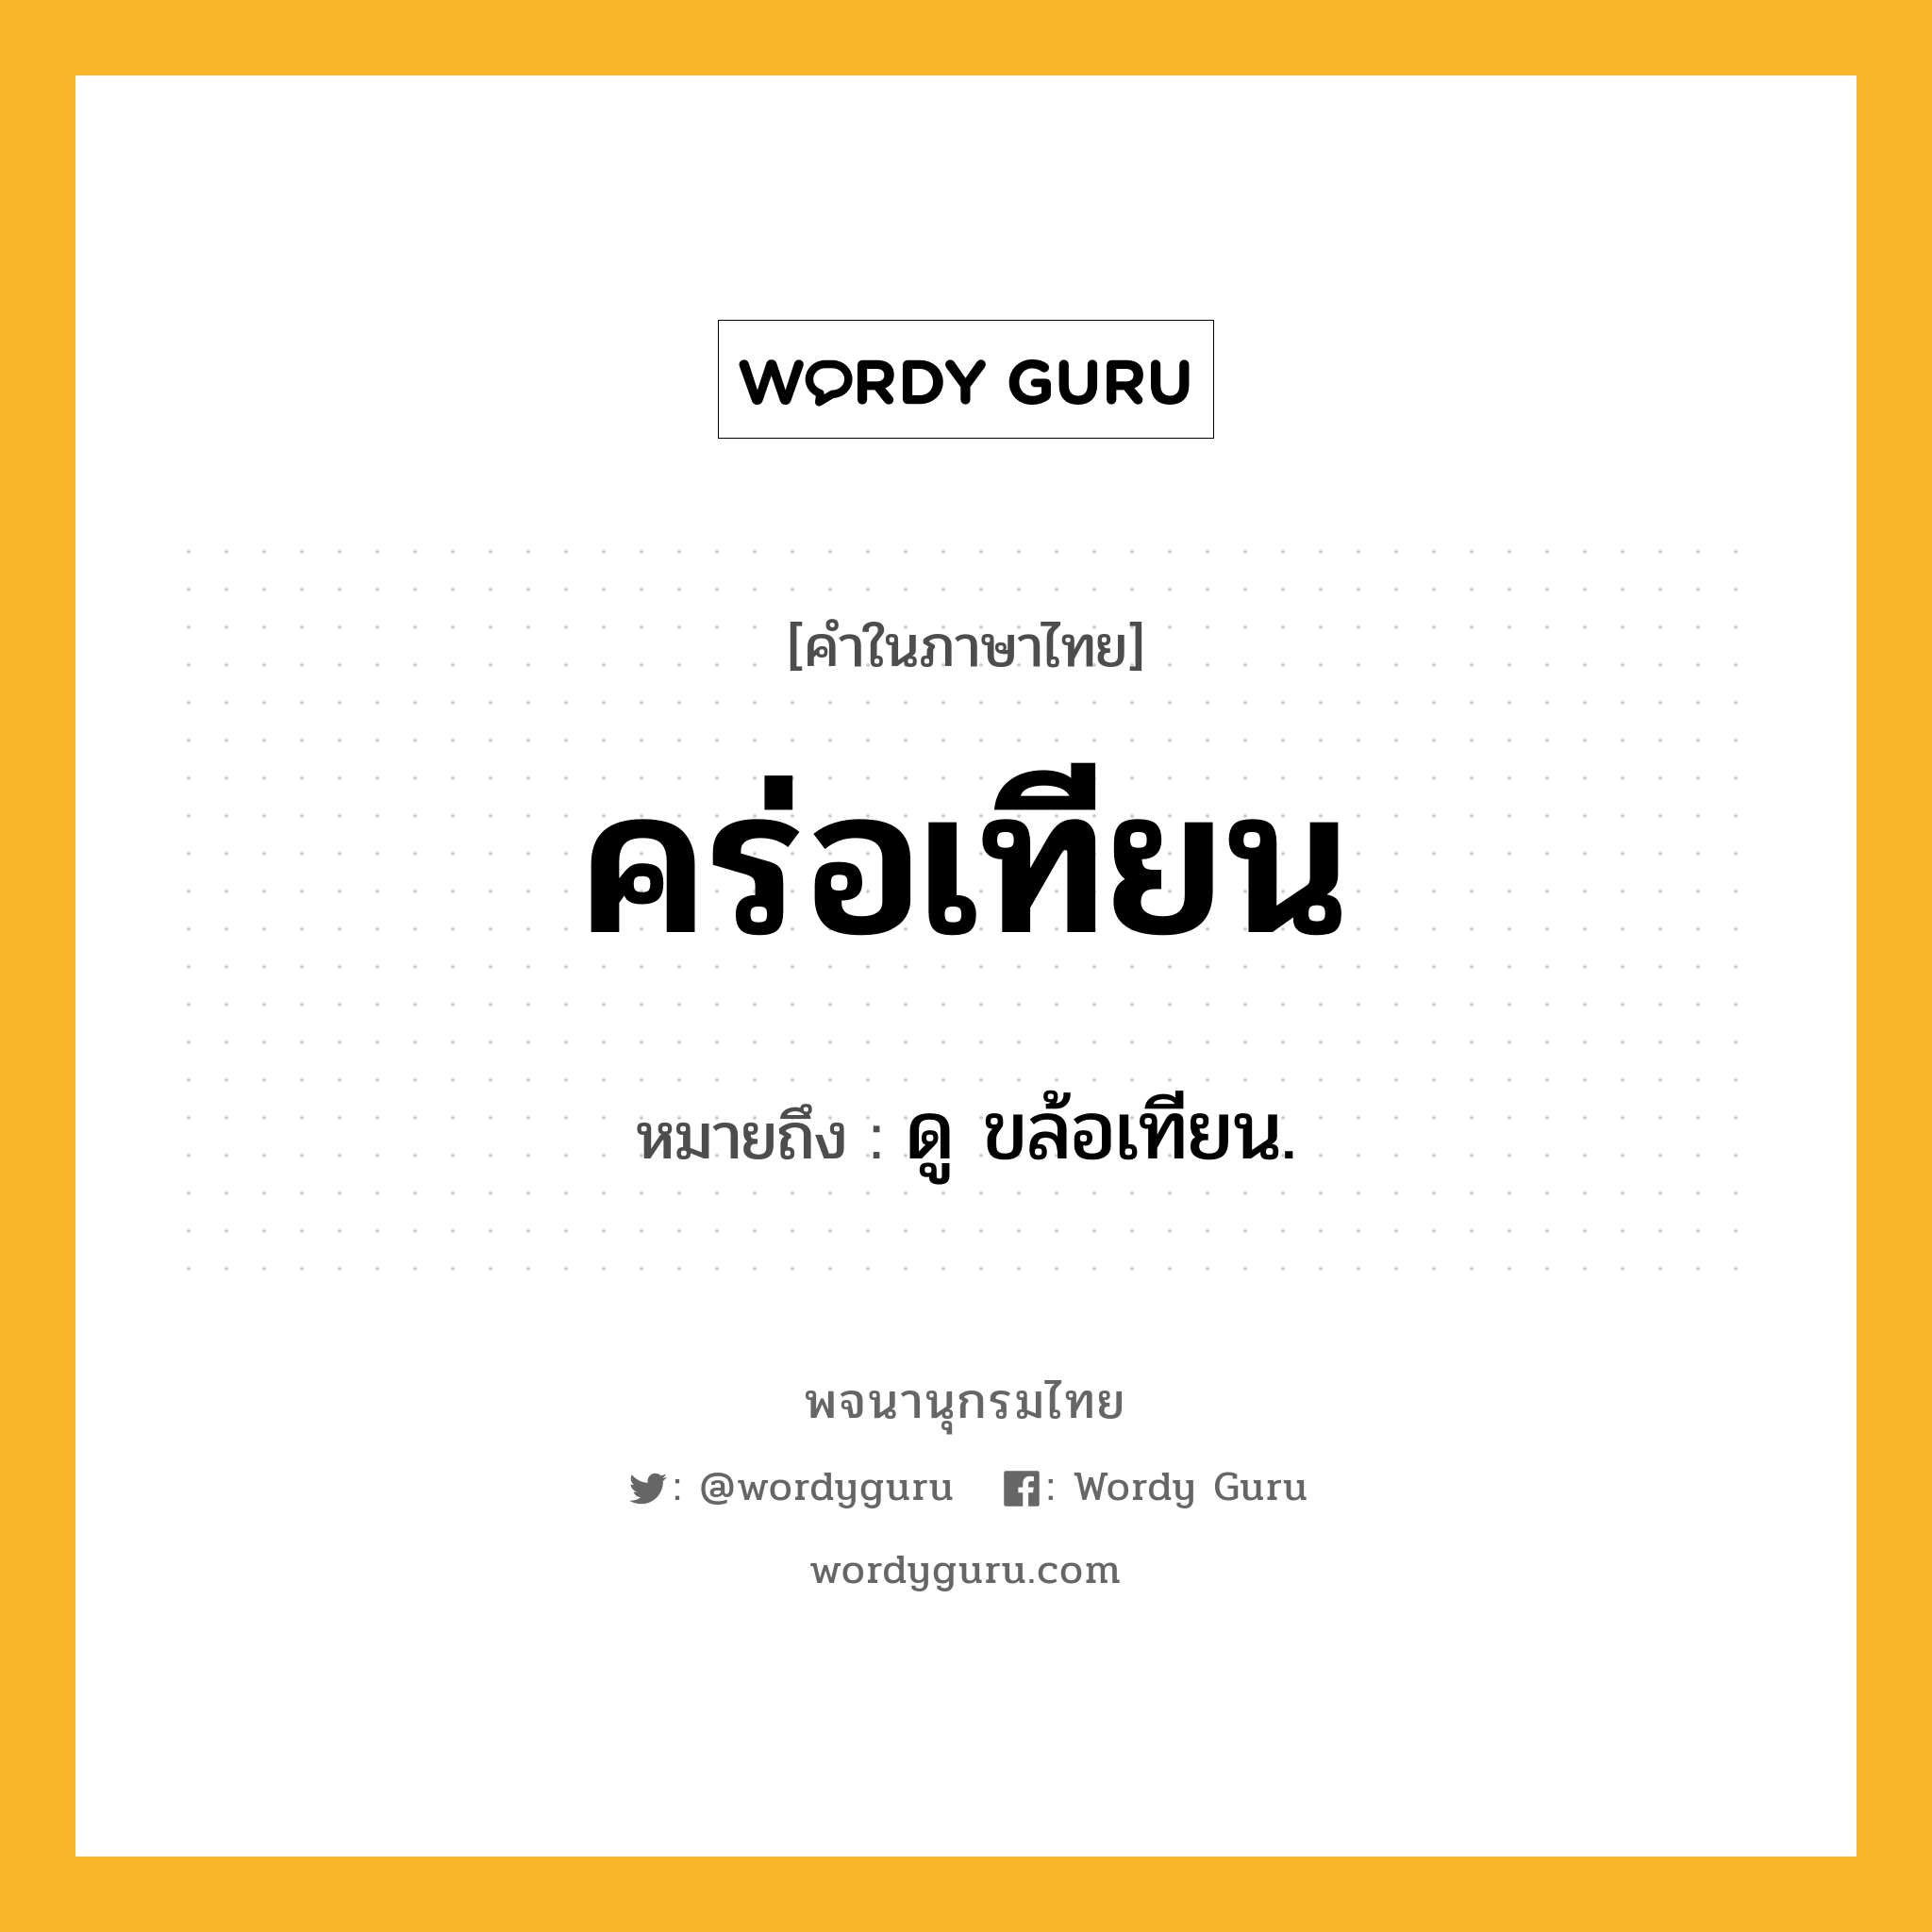 คร่อเทียน ความหมาย หมายถึงอะไร?, คำในภาษาไทย คร่อเทียน หมายถึง ดู ขล้อเทียน.